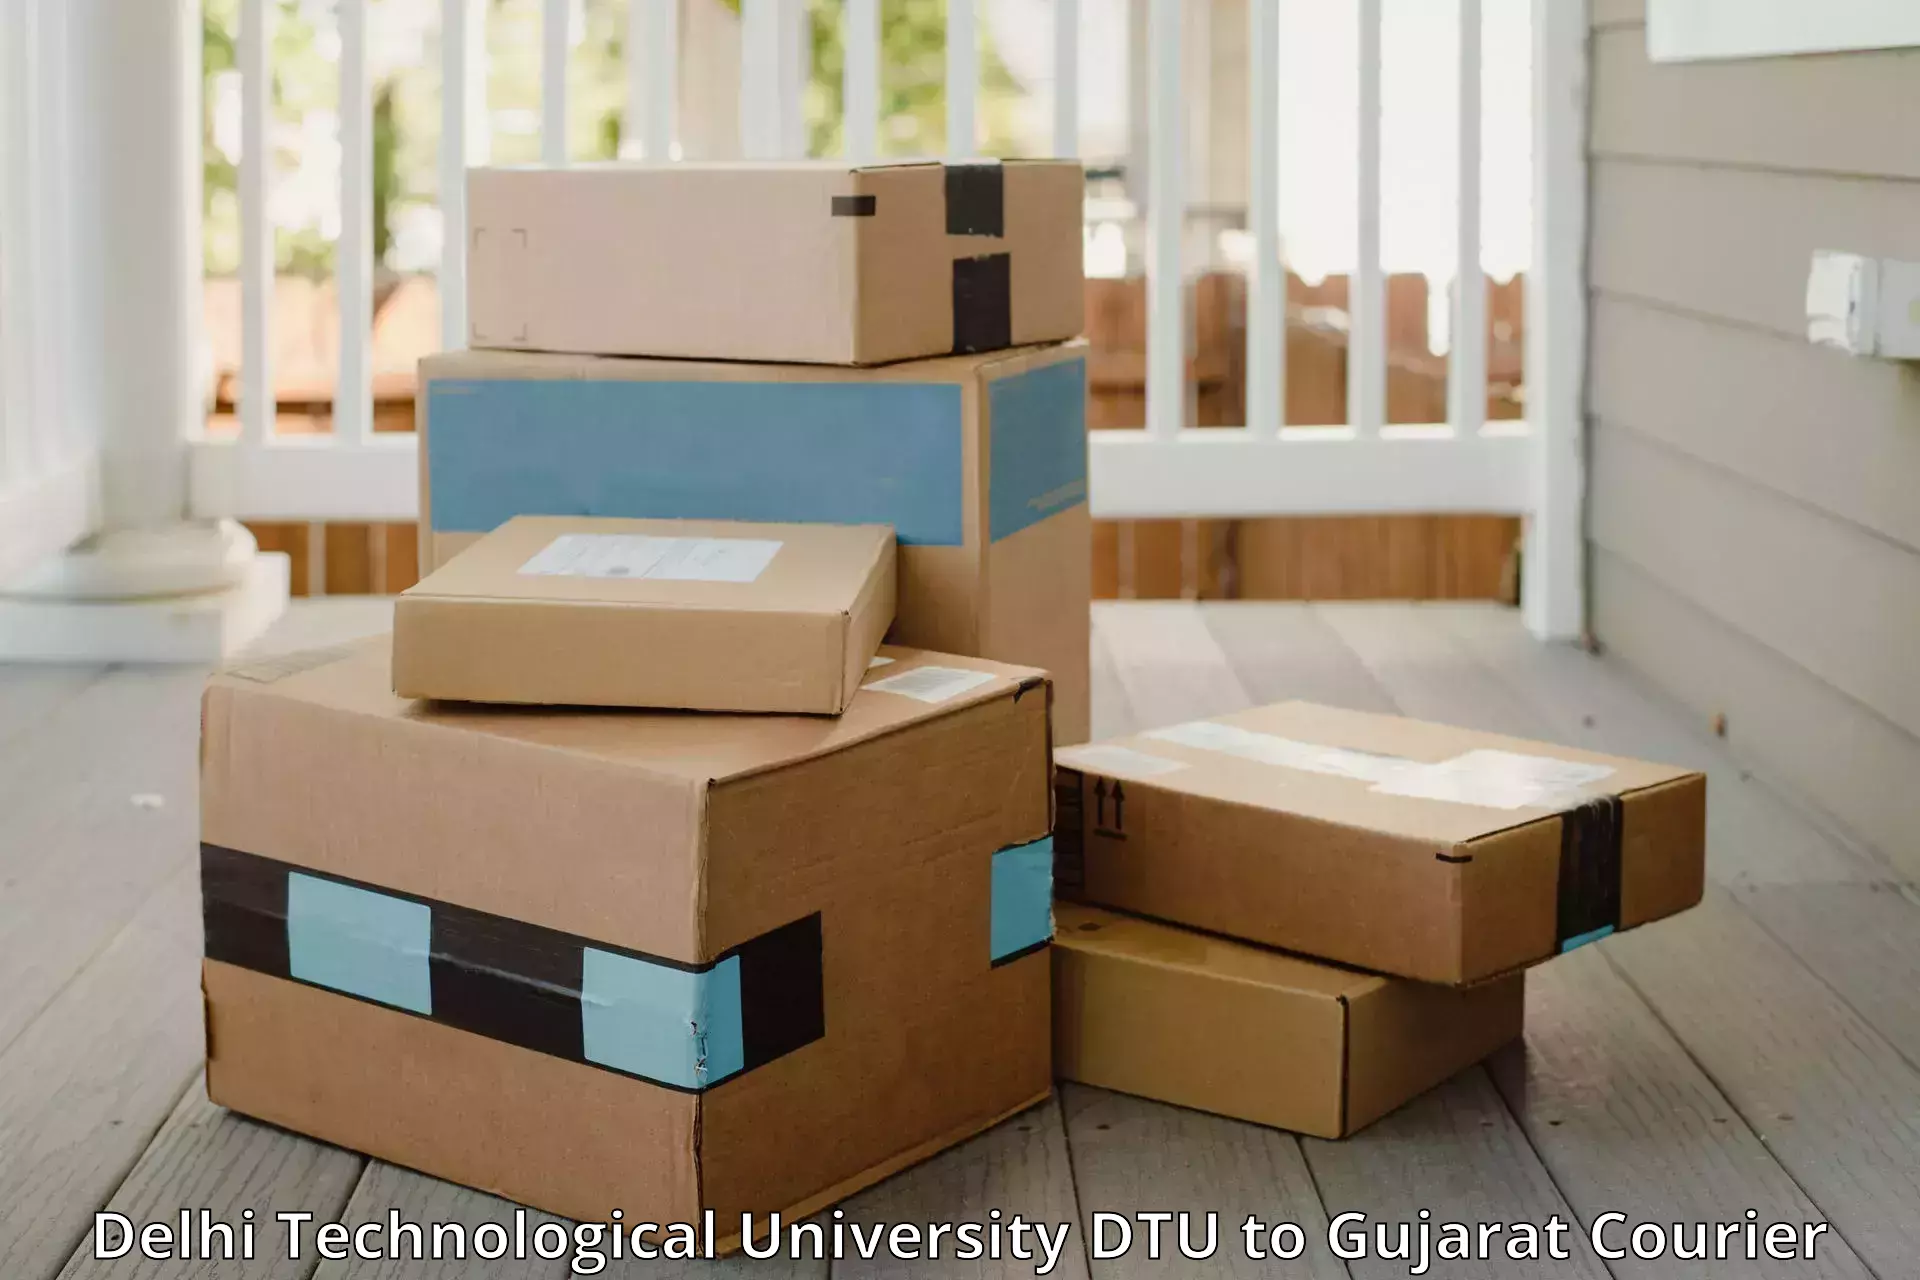 Baggage transport network Delhi Technological University DTU to Gujarat